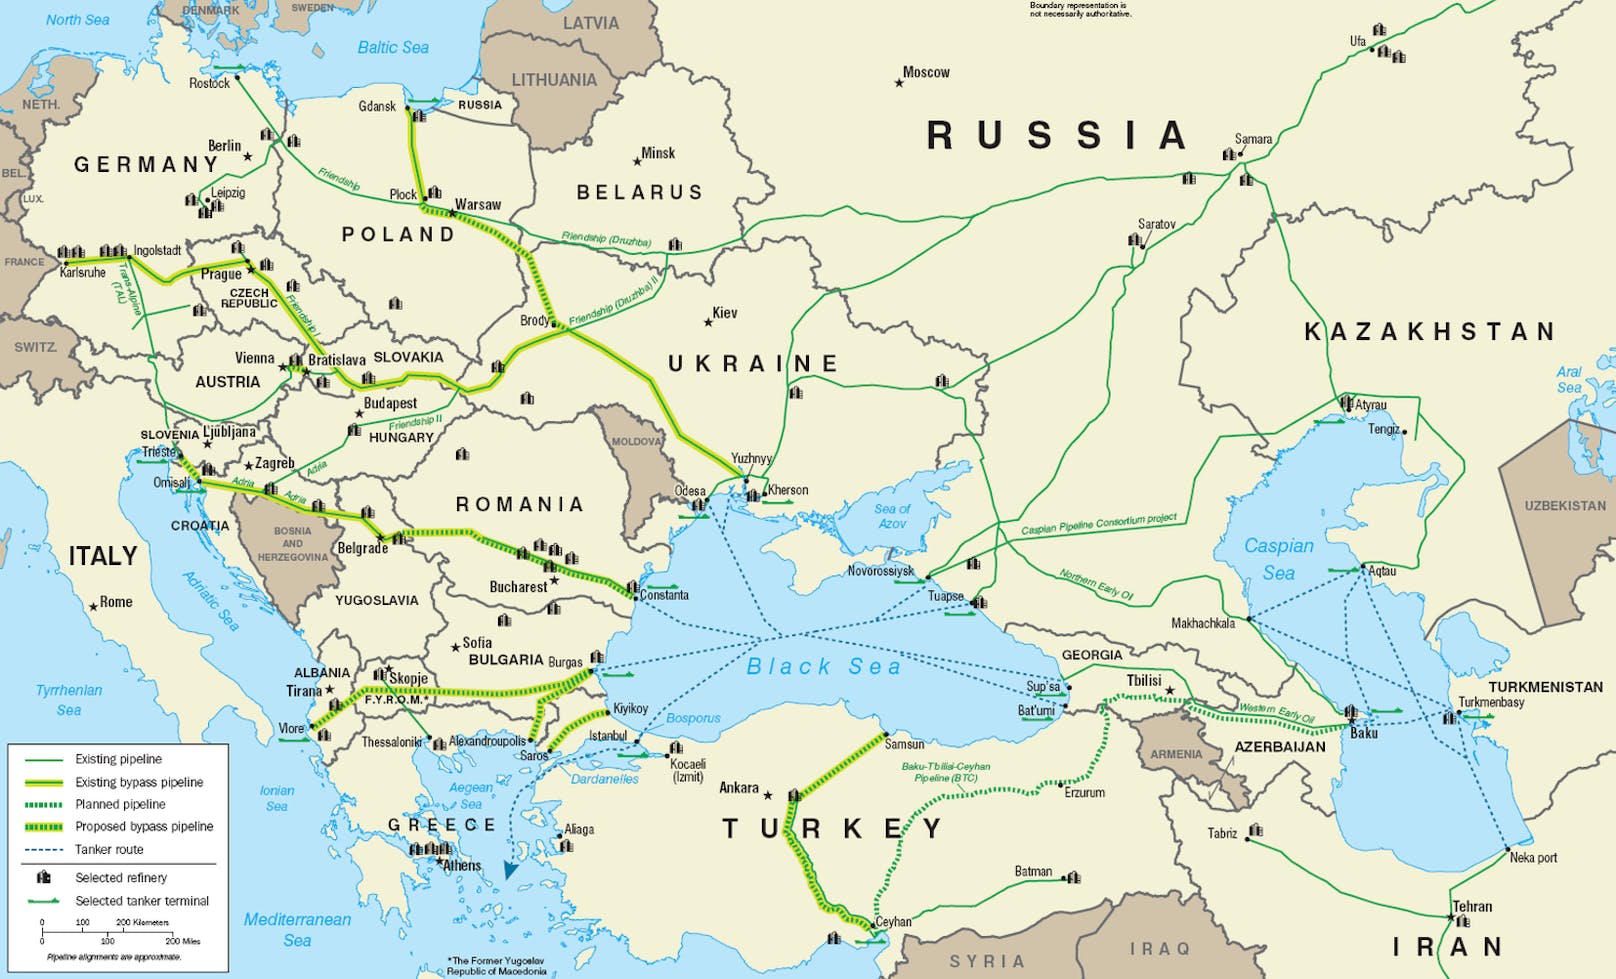 Die Druschba-Ölpipeline (russisch für "Freundschaft") führt von Russland via Belarus nach Polen bzw. via die Ukraine in die Slowakei.